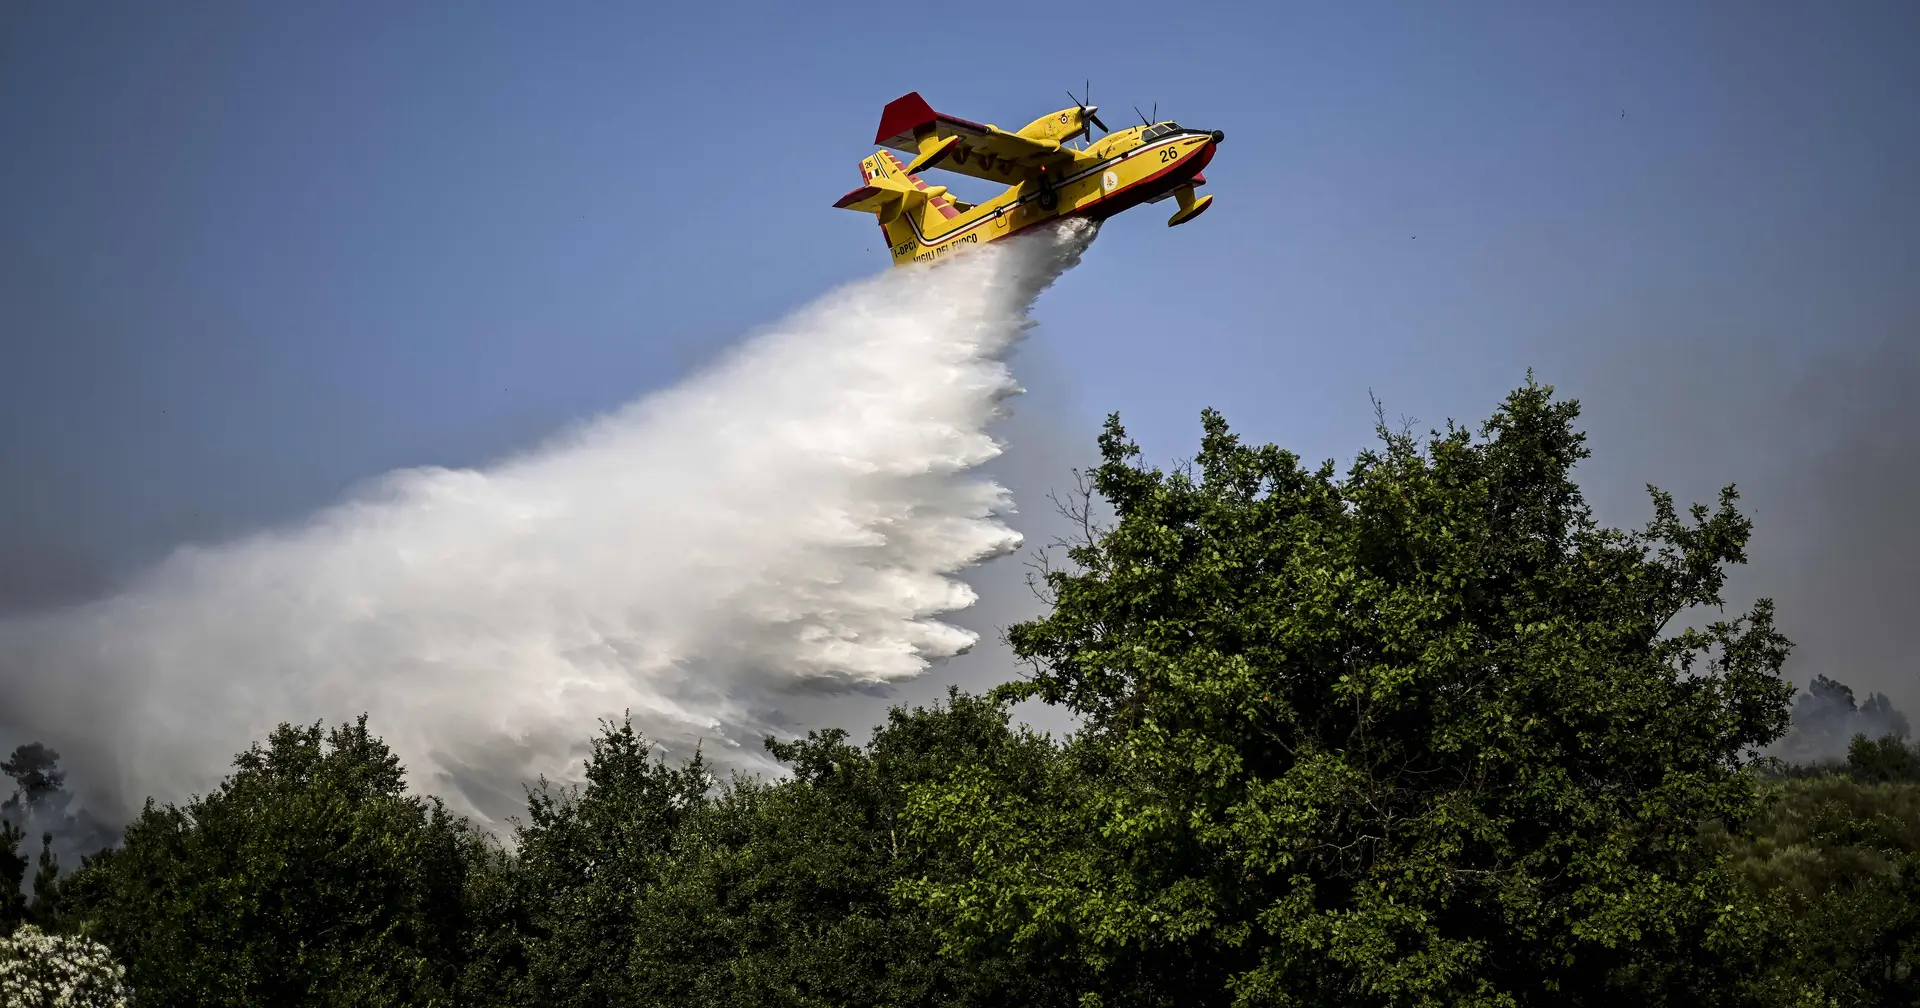 Combate aos incêndios: houve dez acidentes e nove mortes com aeronaves em Portugal desde 2009